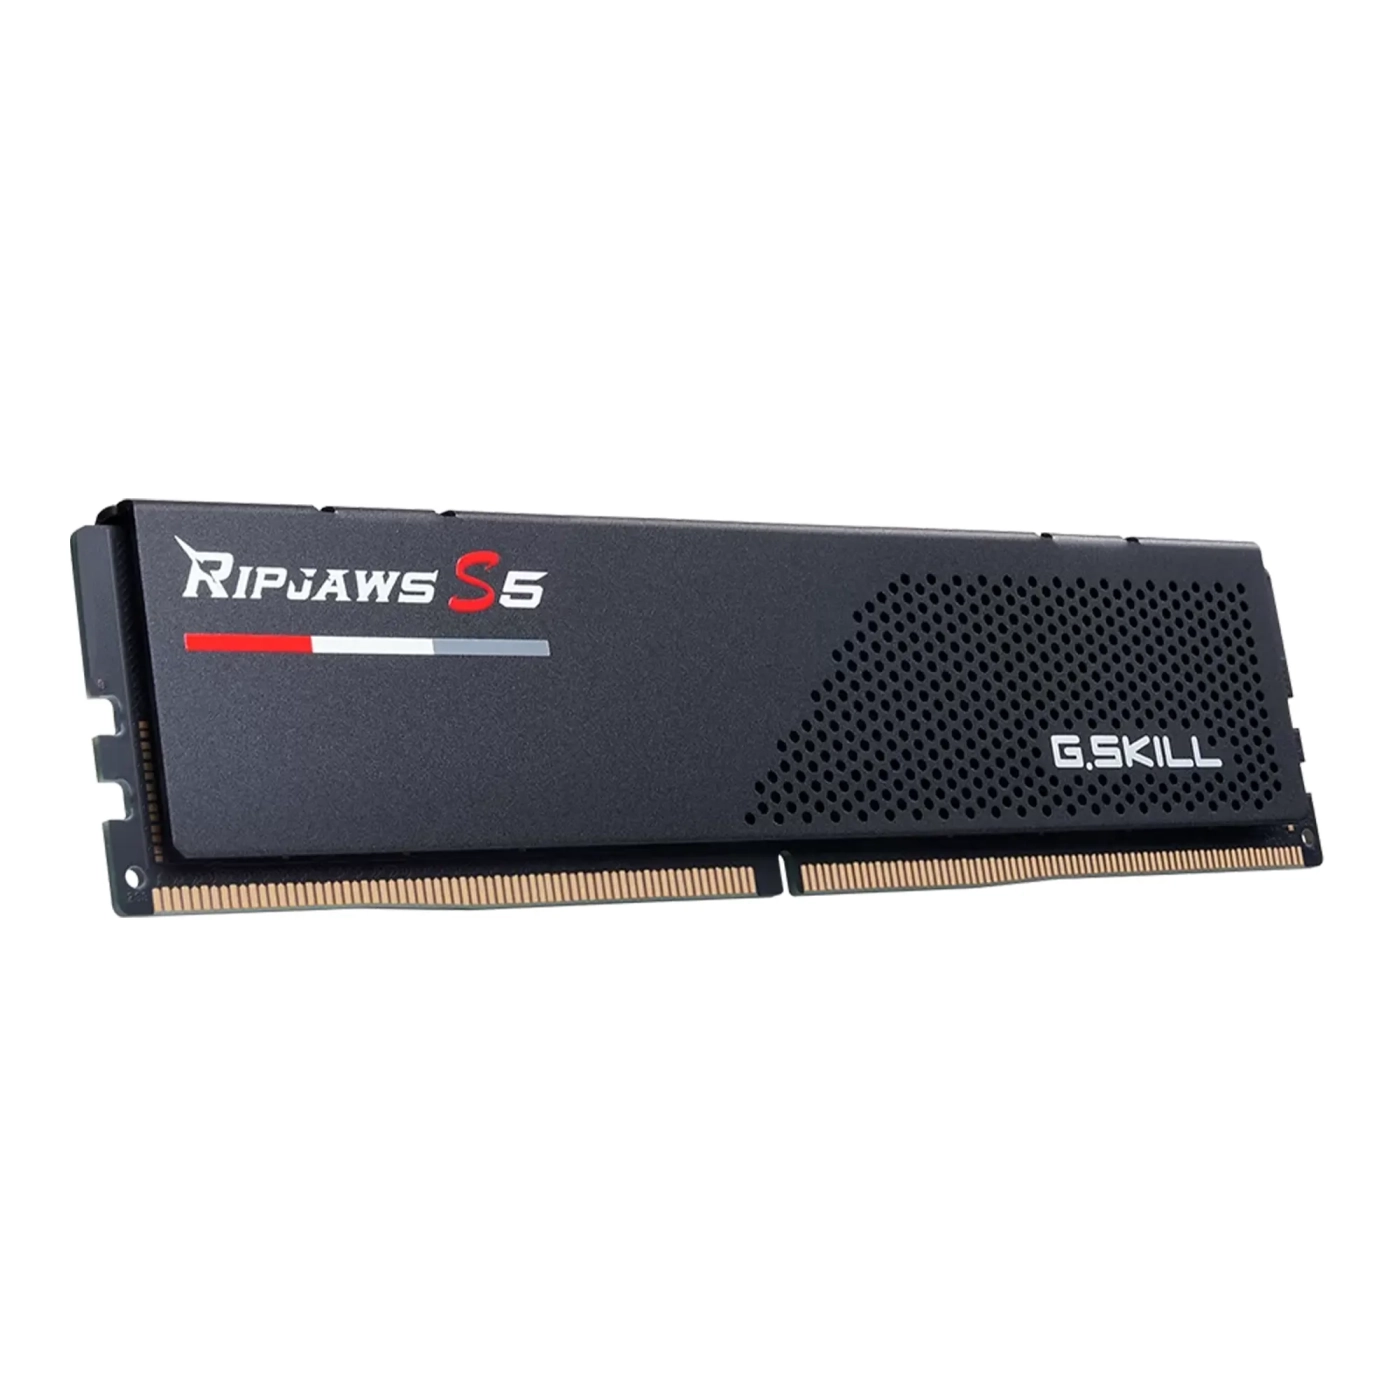 Купить Модуль памяти G.Skill Ripjaws S5 Black DDR5-5600 32GB (2x16GB) CL28-34-34-89 1.35V - фото 3